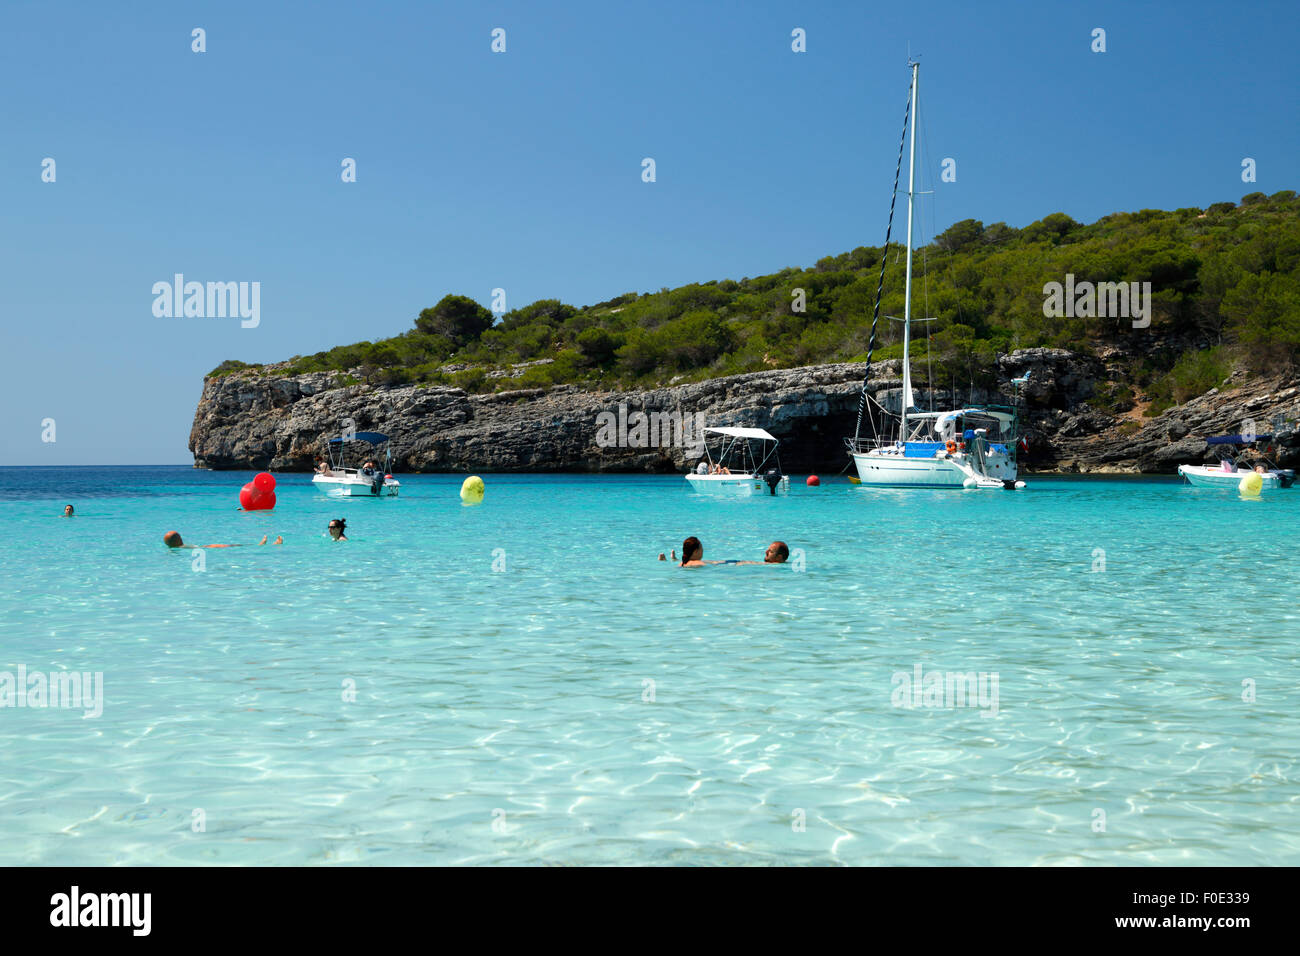 Cala en Turqueta, costa sur oeste, cerca de Ciutadella, Menorca, Islas Baleares, España, Europa Foto de stock